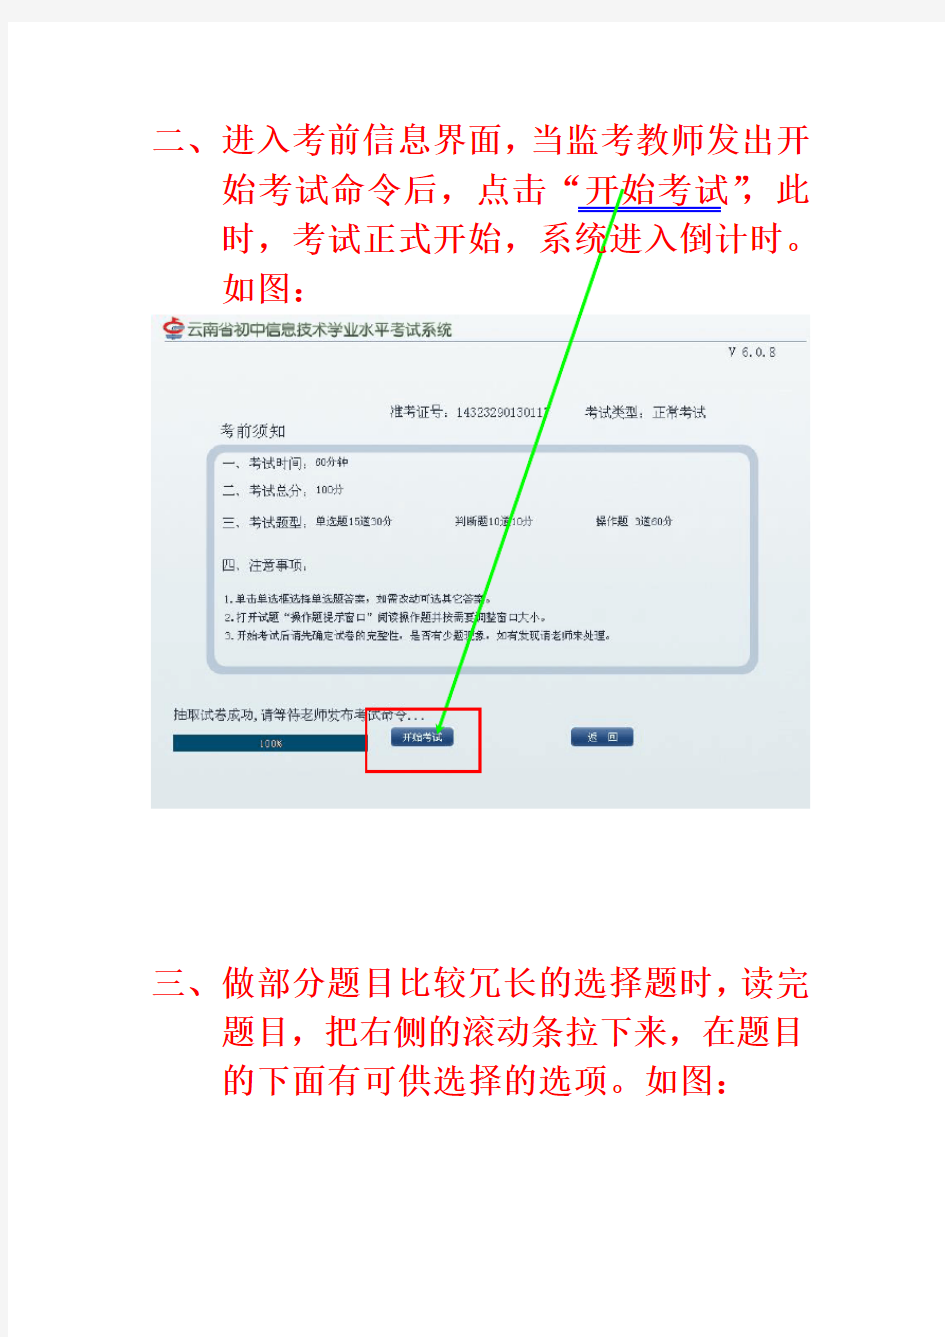 云南省初中信息技术学业水平考试系统(卓帆V6.0.8版本)使用说明